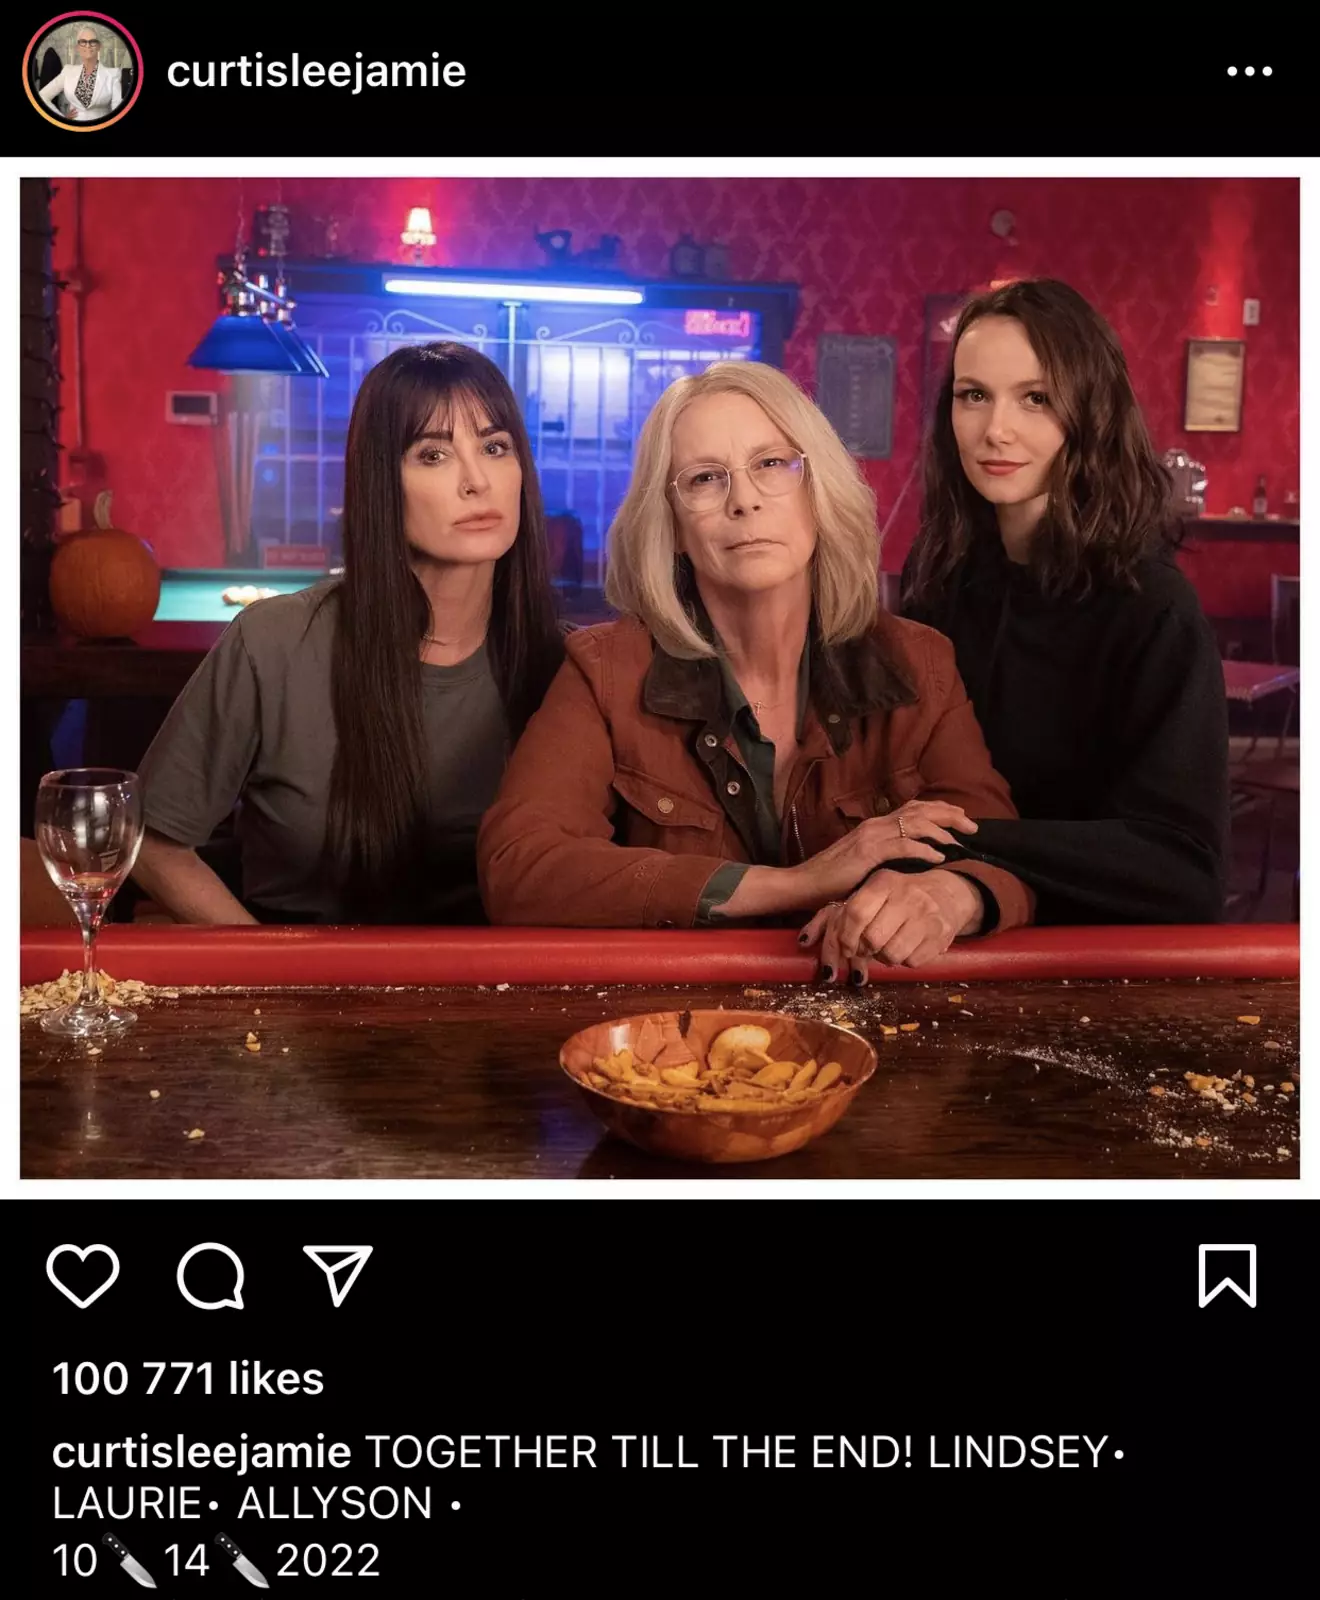 Подпись гласит: "Вместе до самого конца! Линдси - Лори - Элисон" и дата американской премьеры третьего "Хэллоуина" - 14 октября 2022 года.